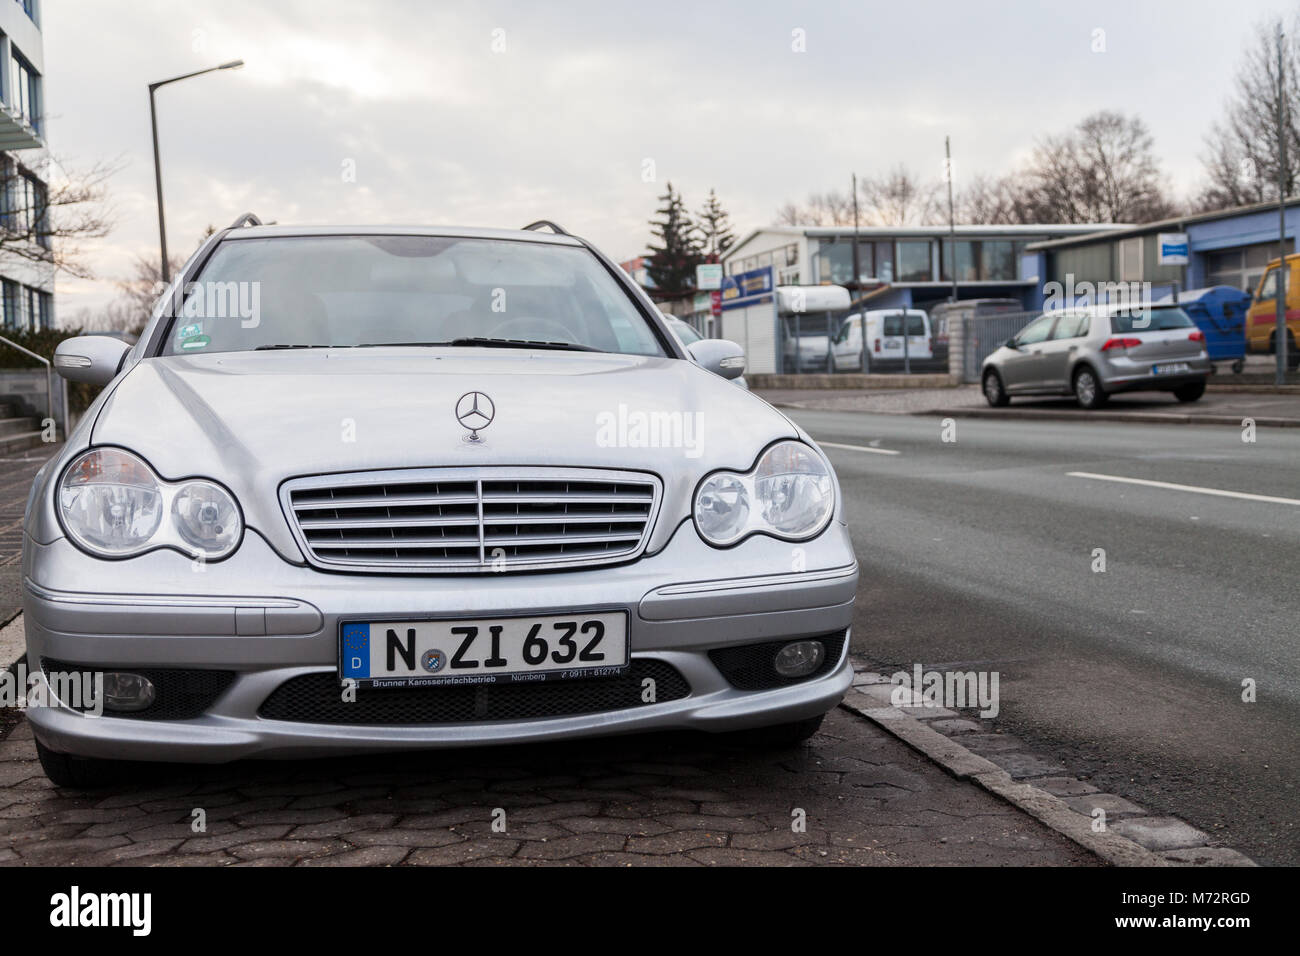 Nürnberg / ALLEMAGNE - mars 4, 2018 : voiture Mercedes Benz se dresse sur une bande de stationnement à proximité d'une rue dans un destrict industrielle. Banque D'Images